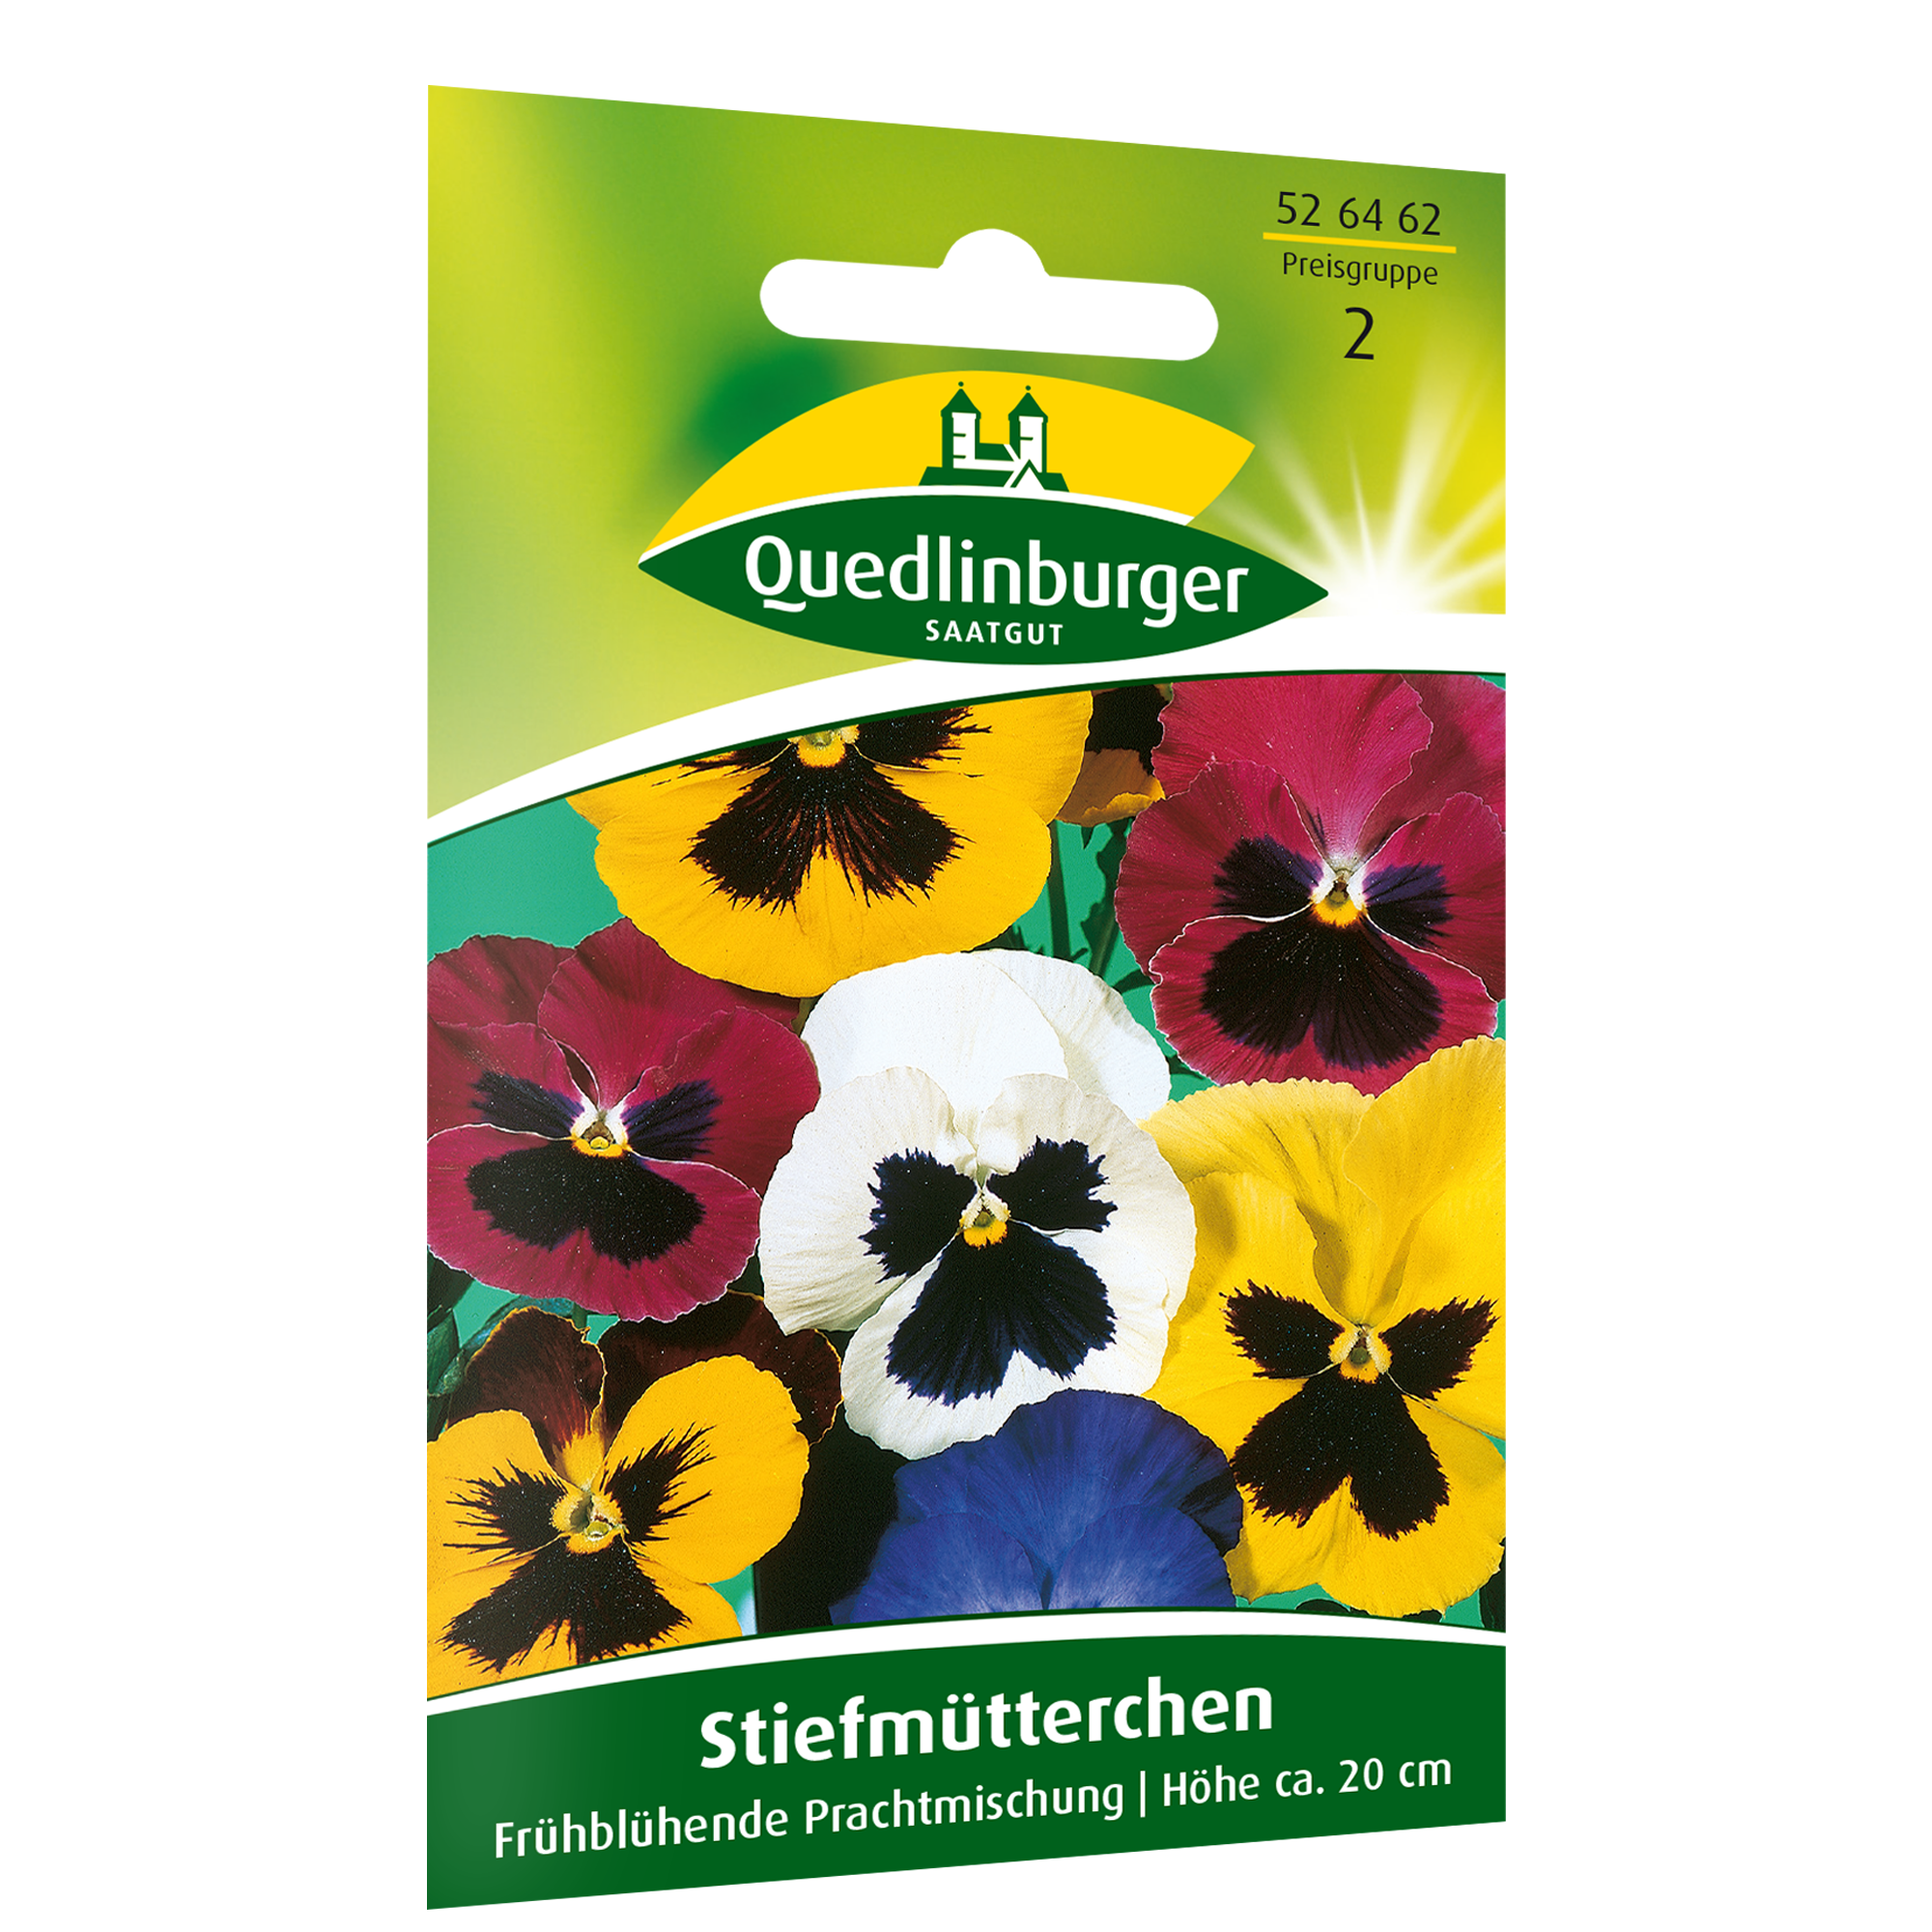 Stiefmütterchen 'Frühblühende Prachtmischung' + product picture